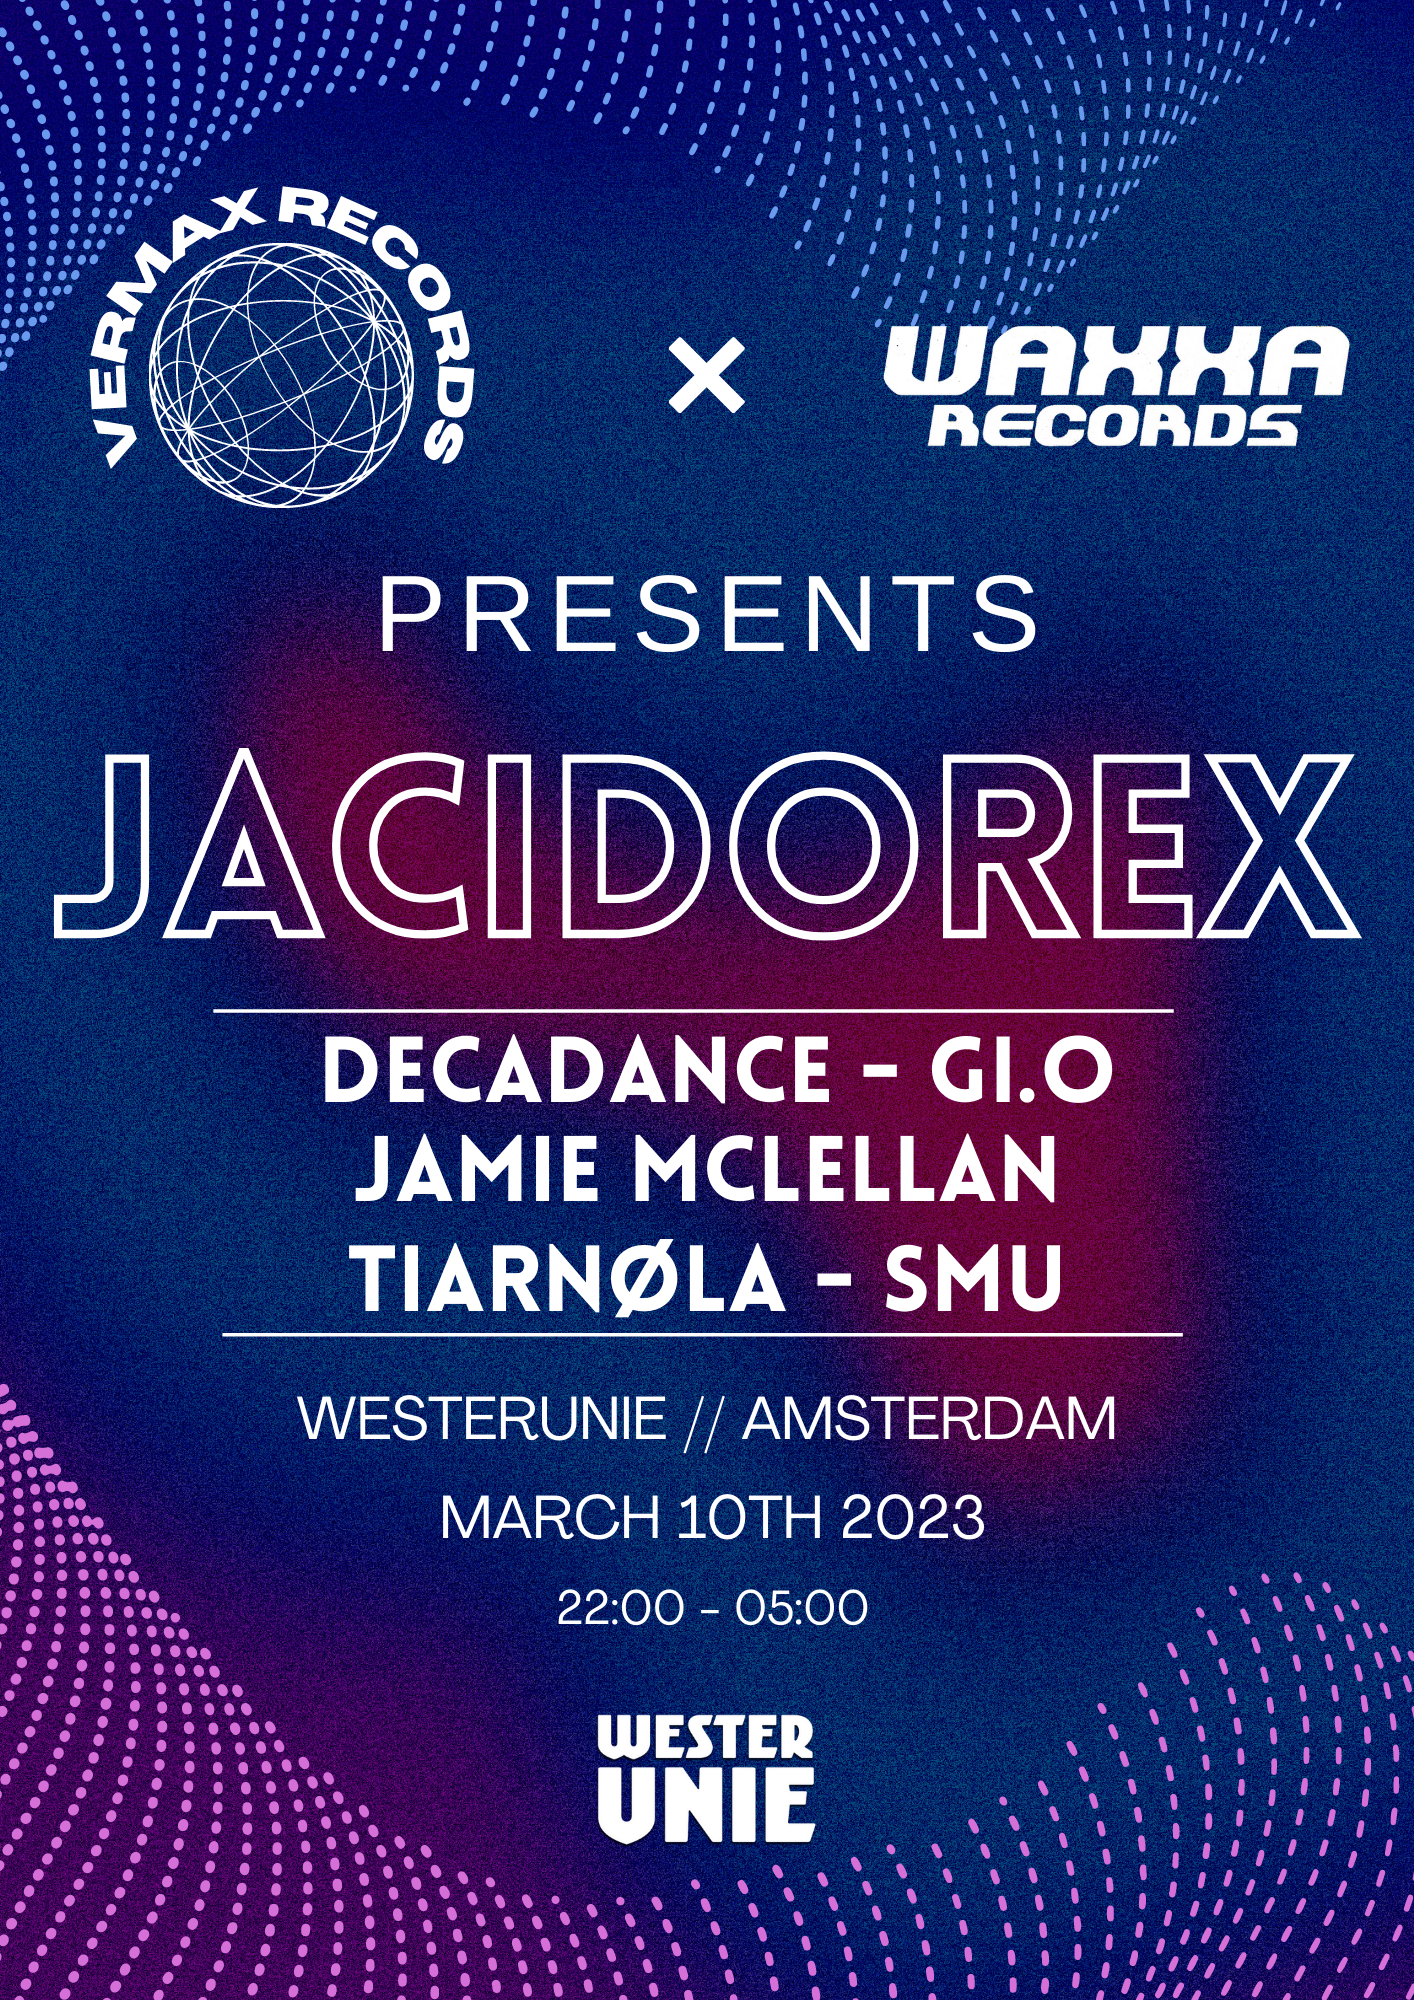 [CANCELLED] Vermax & WAXXA presents: Jacidorex - フライヤー表